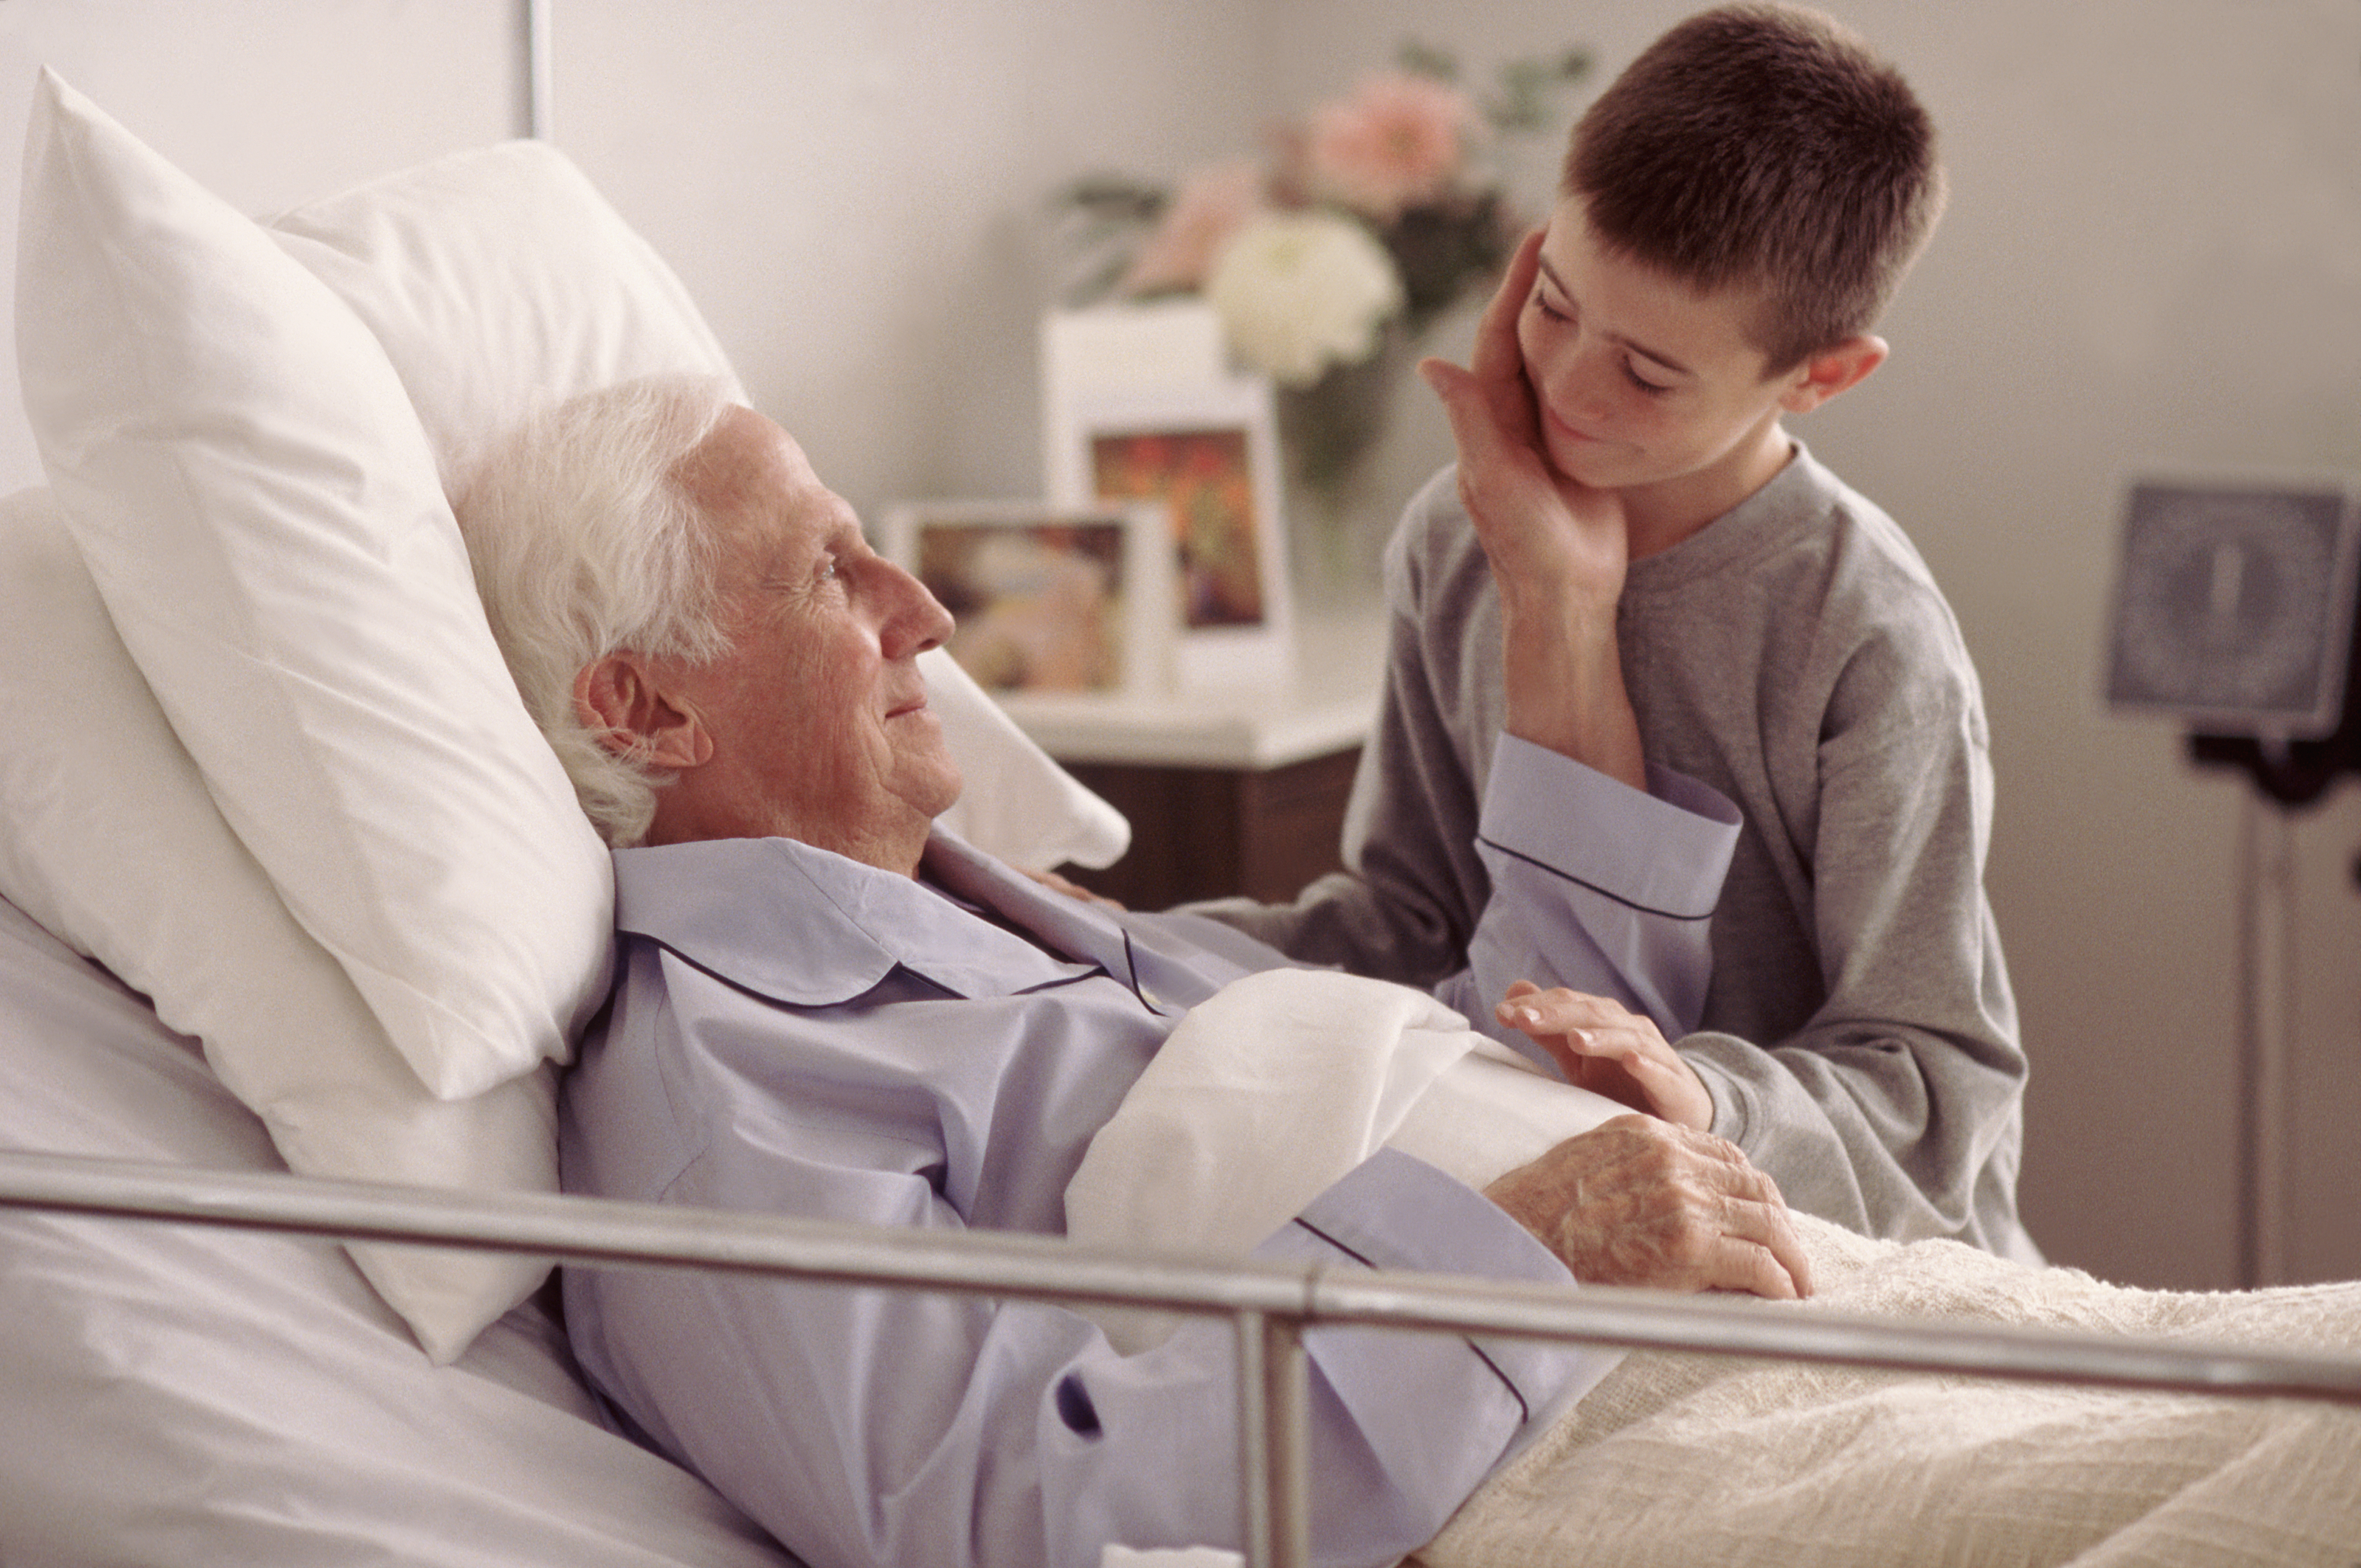 Petit-fils rendant visite à son grand-père à l'hôpital | Source : Getty Images